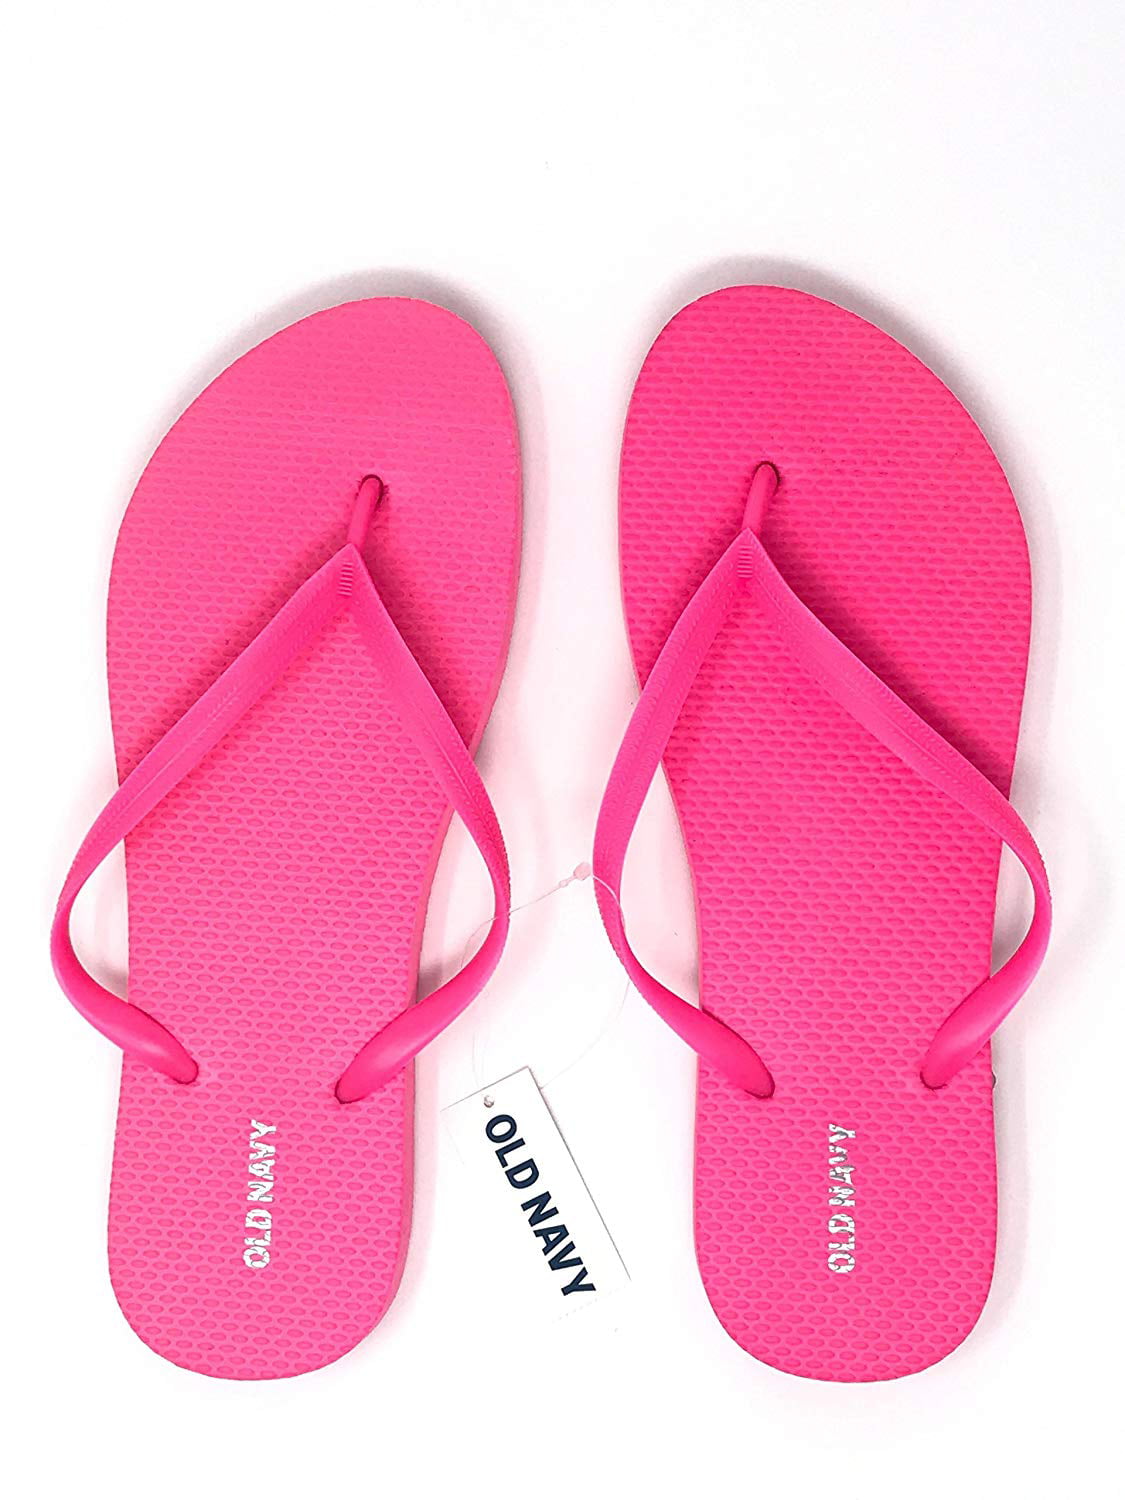 Old Navy Women Beach Summer Casual Flip Flop Sandals